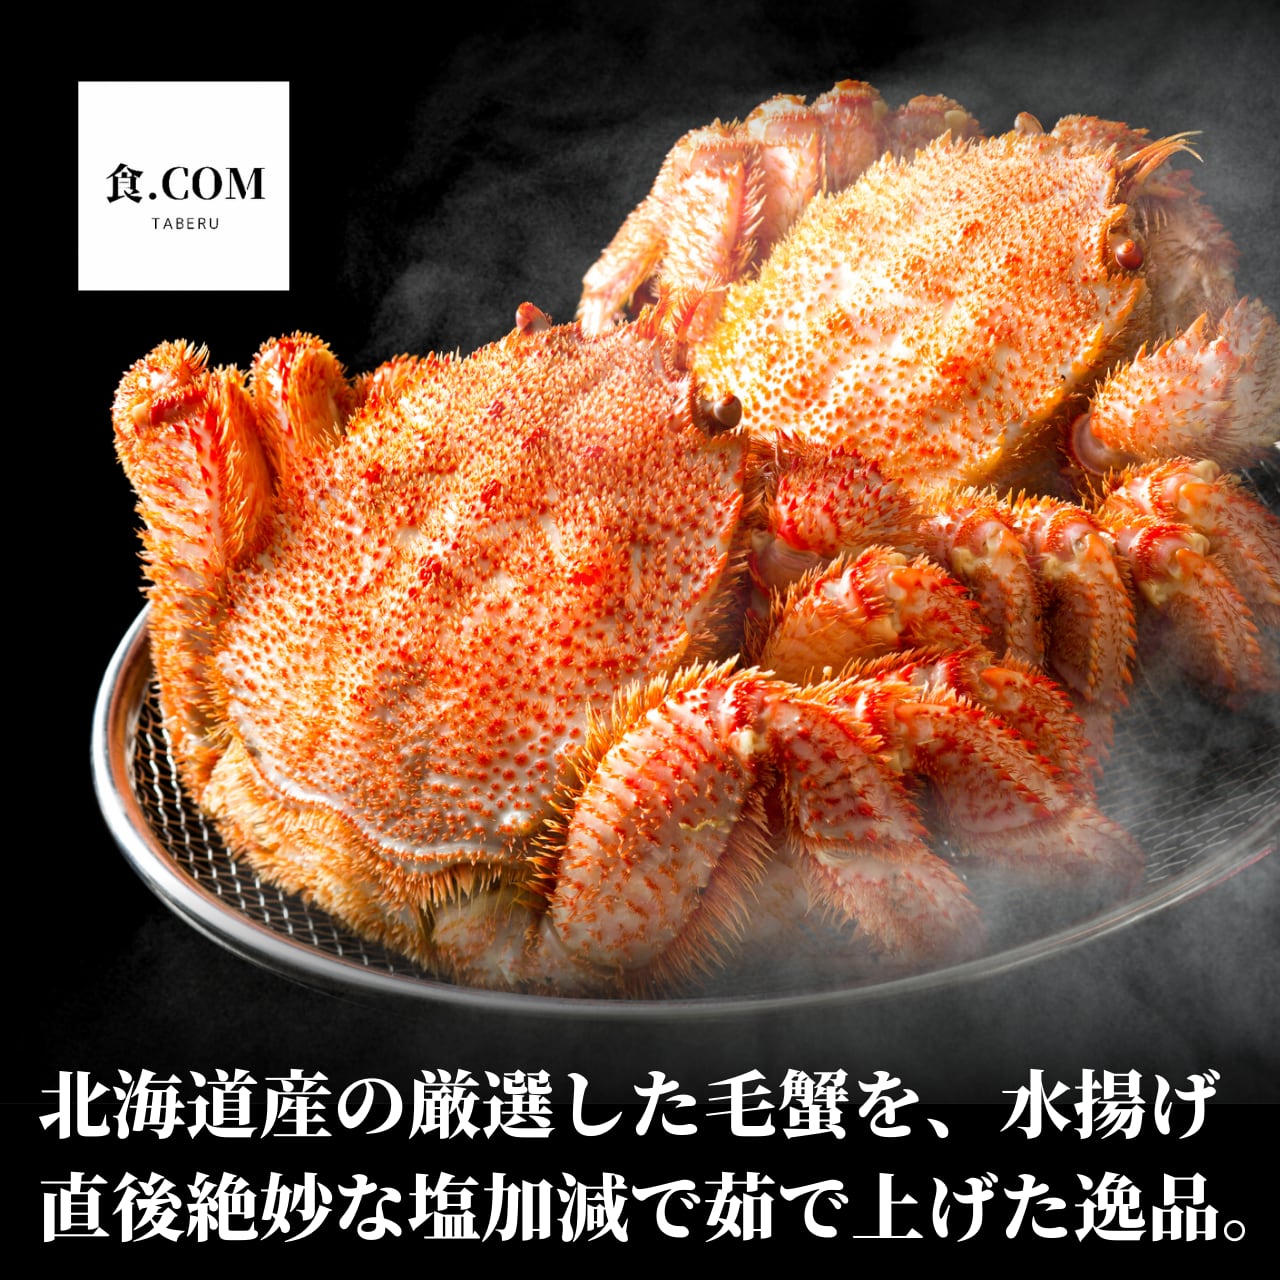 北海道毛蟹1尾500g×2尾〈ボイル冷凍〉